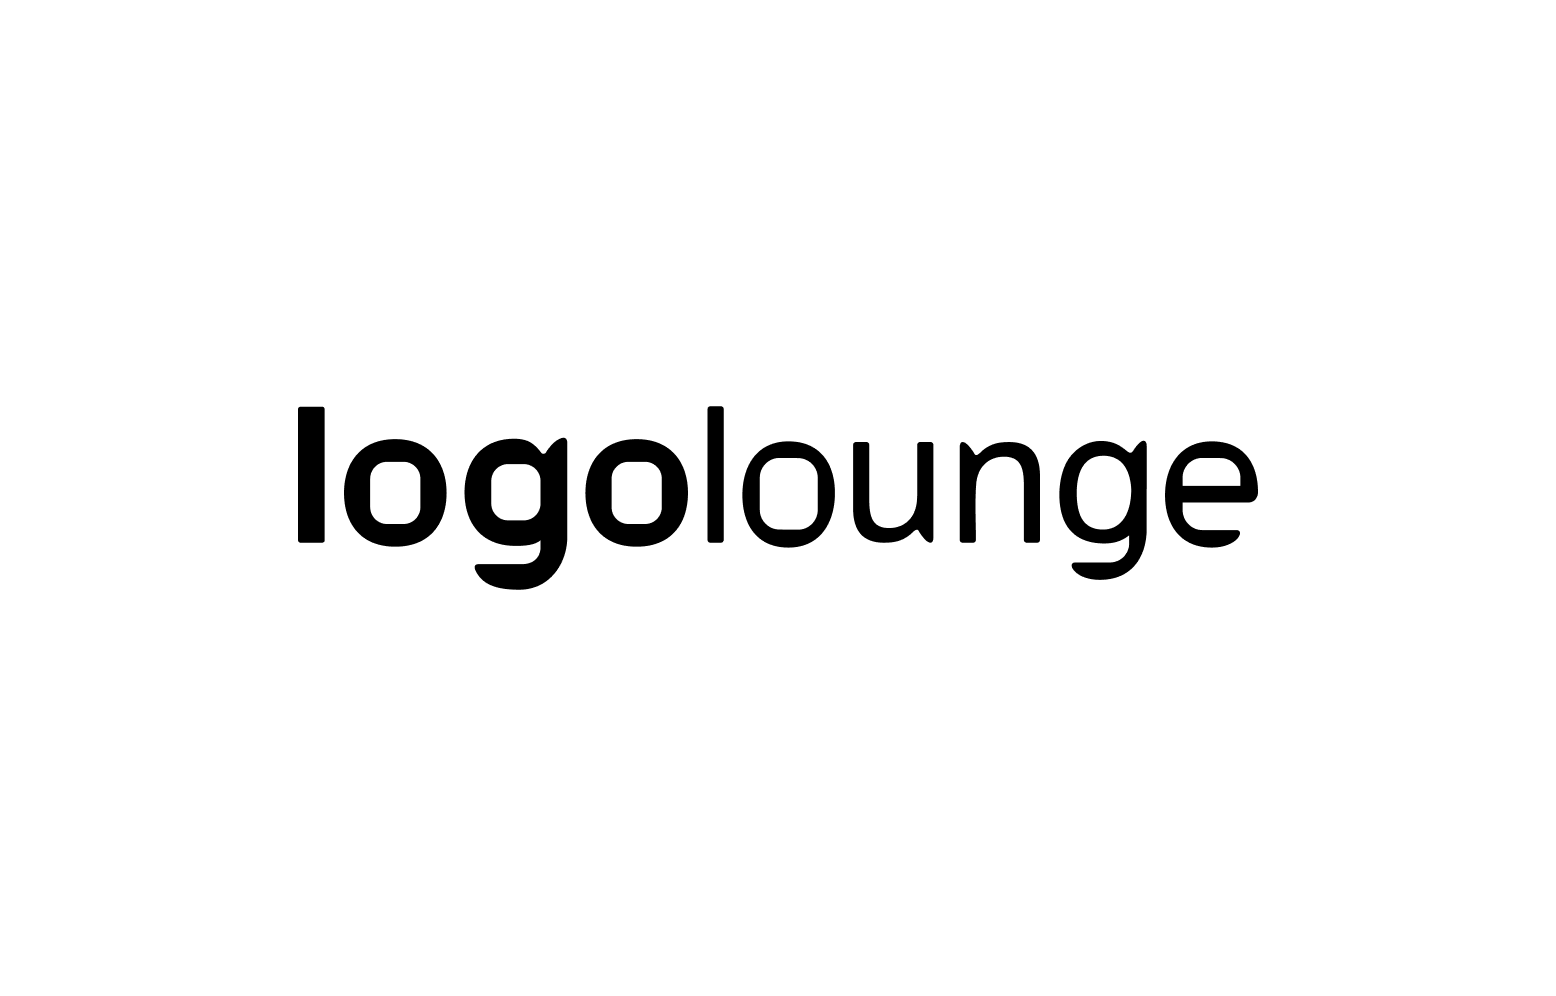 Logo Lounge Logo